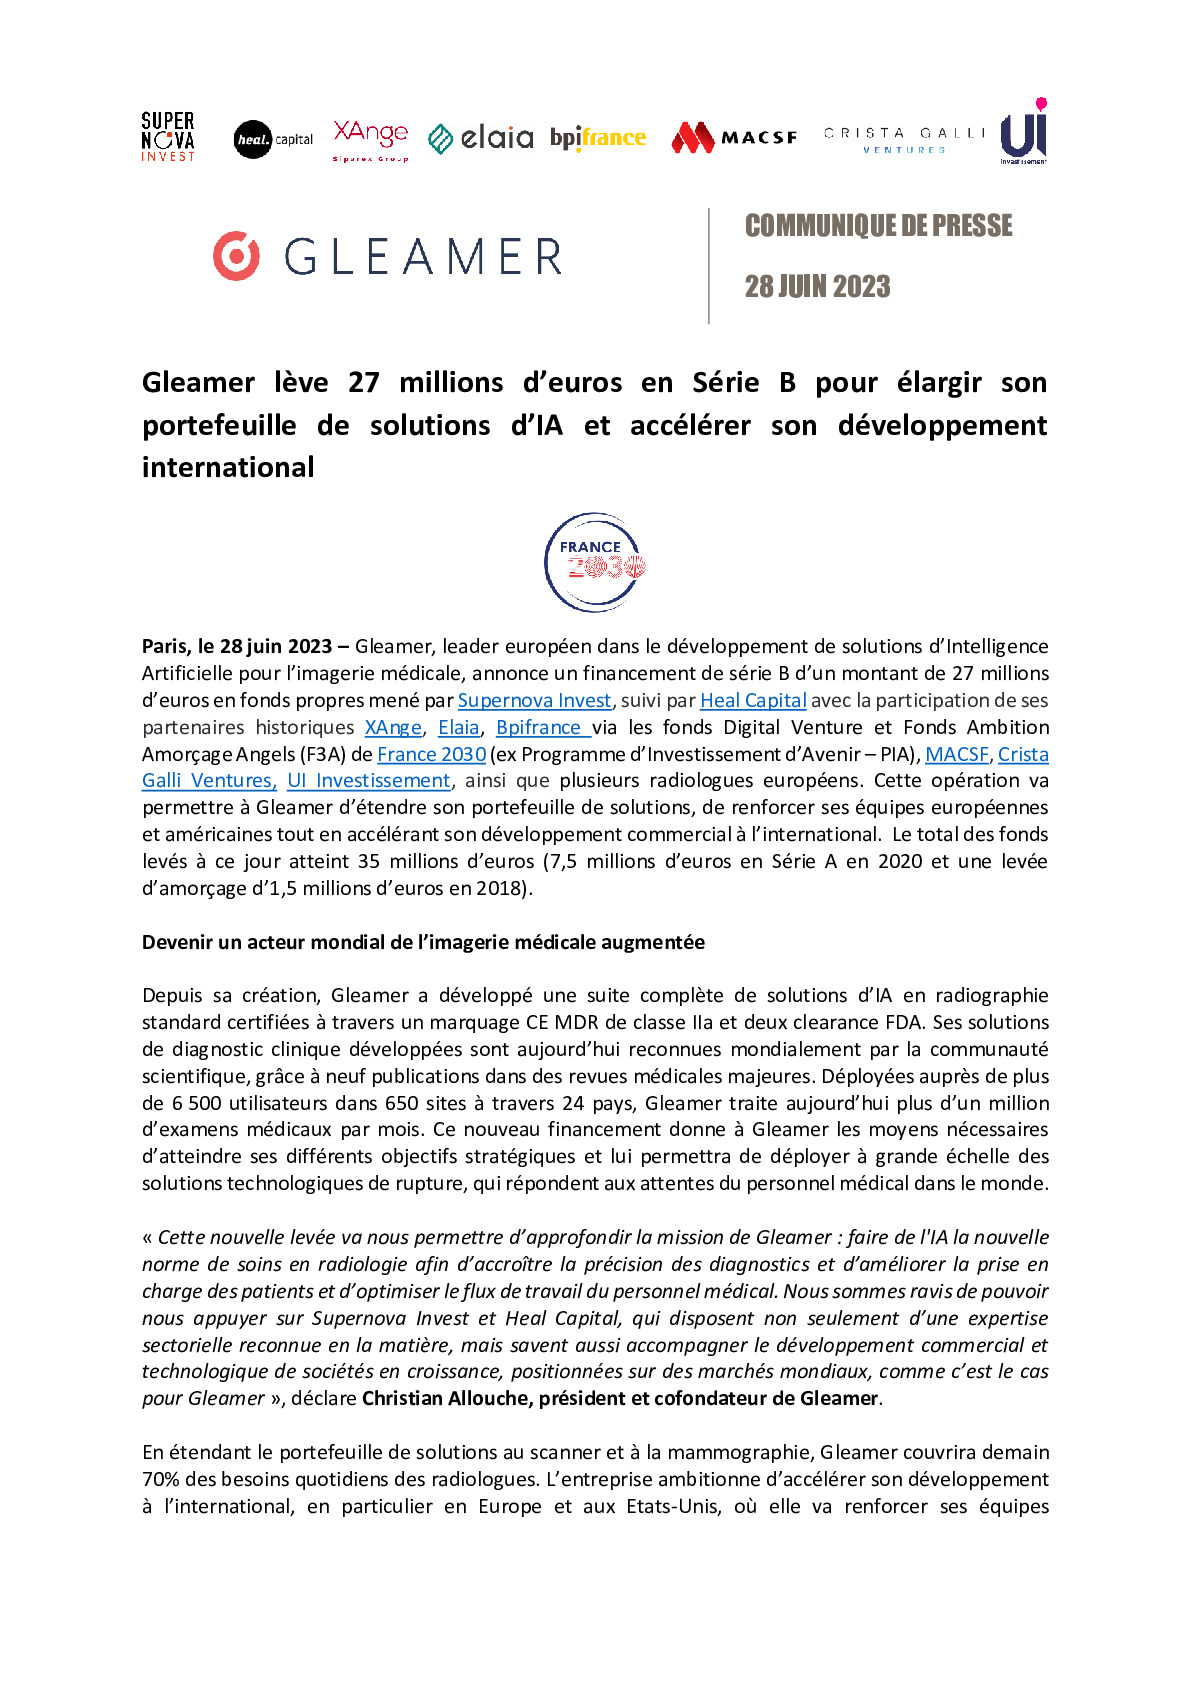 2023 06 28 – CP Gleamer lève 27 millions d’euros en Série B pour élargir son portefeuille de solutions d’IA et accélérer son développement international-pdf